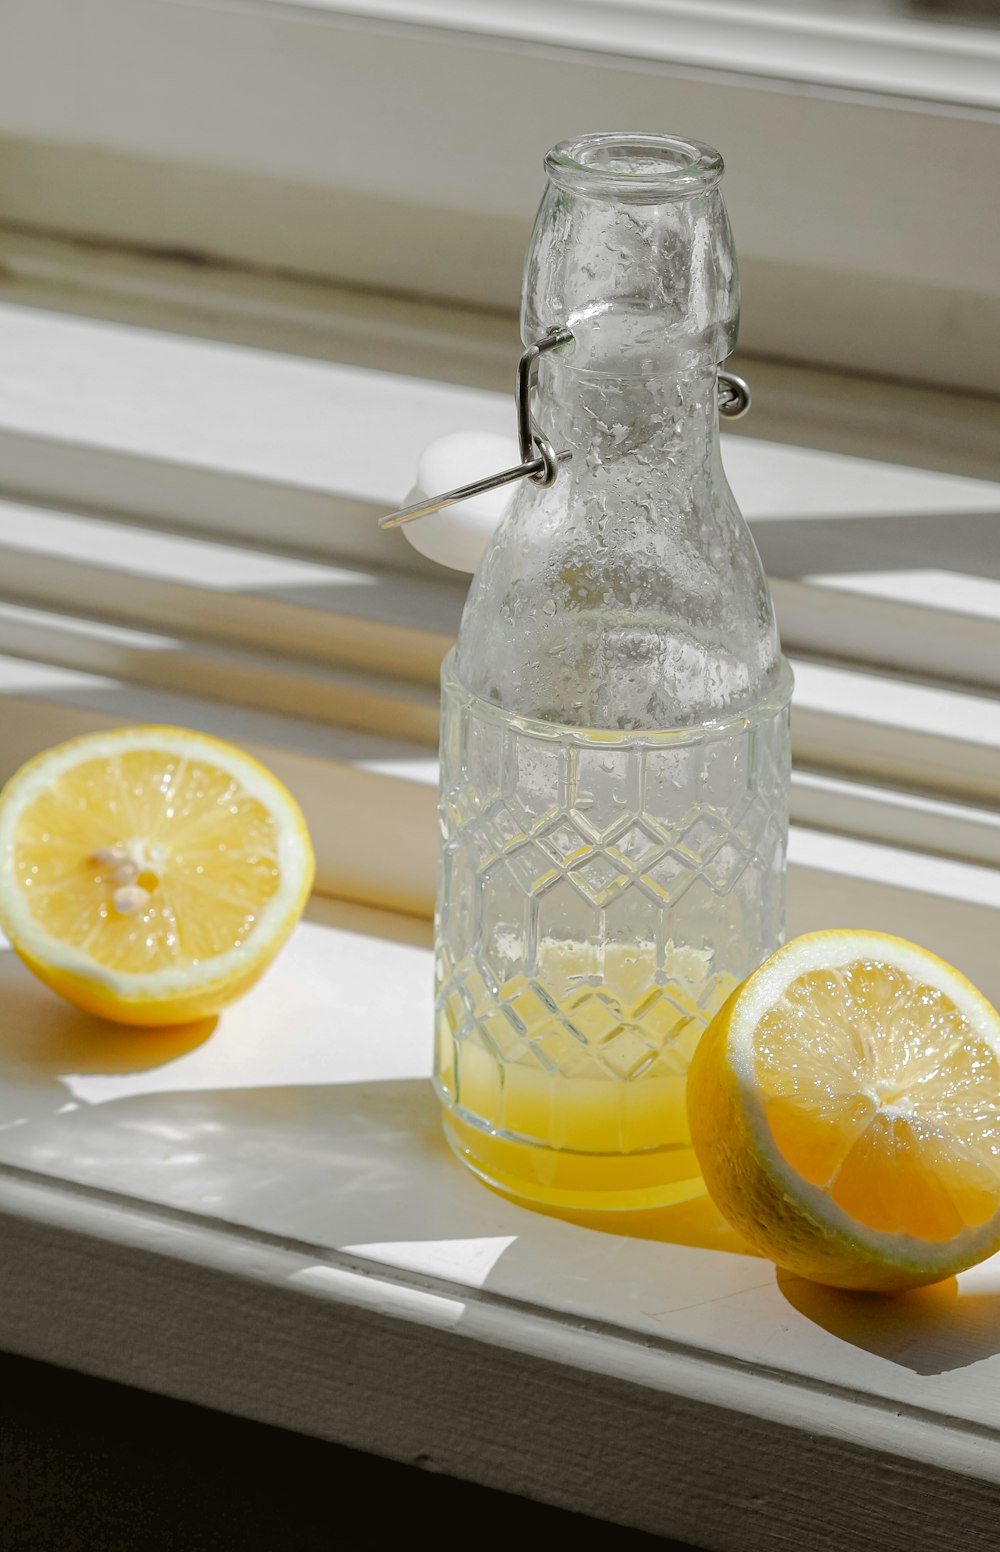 a bottle of lemonade sitting on a window sill